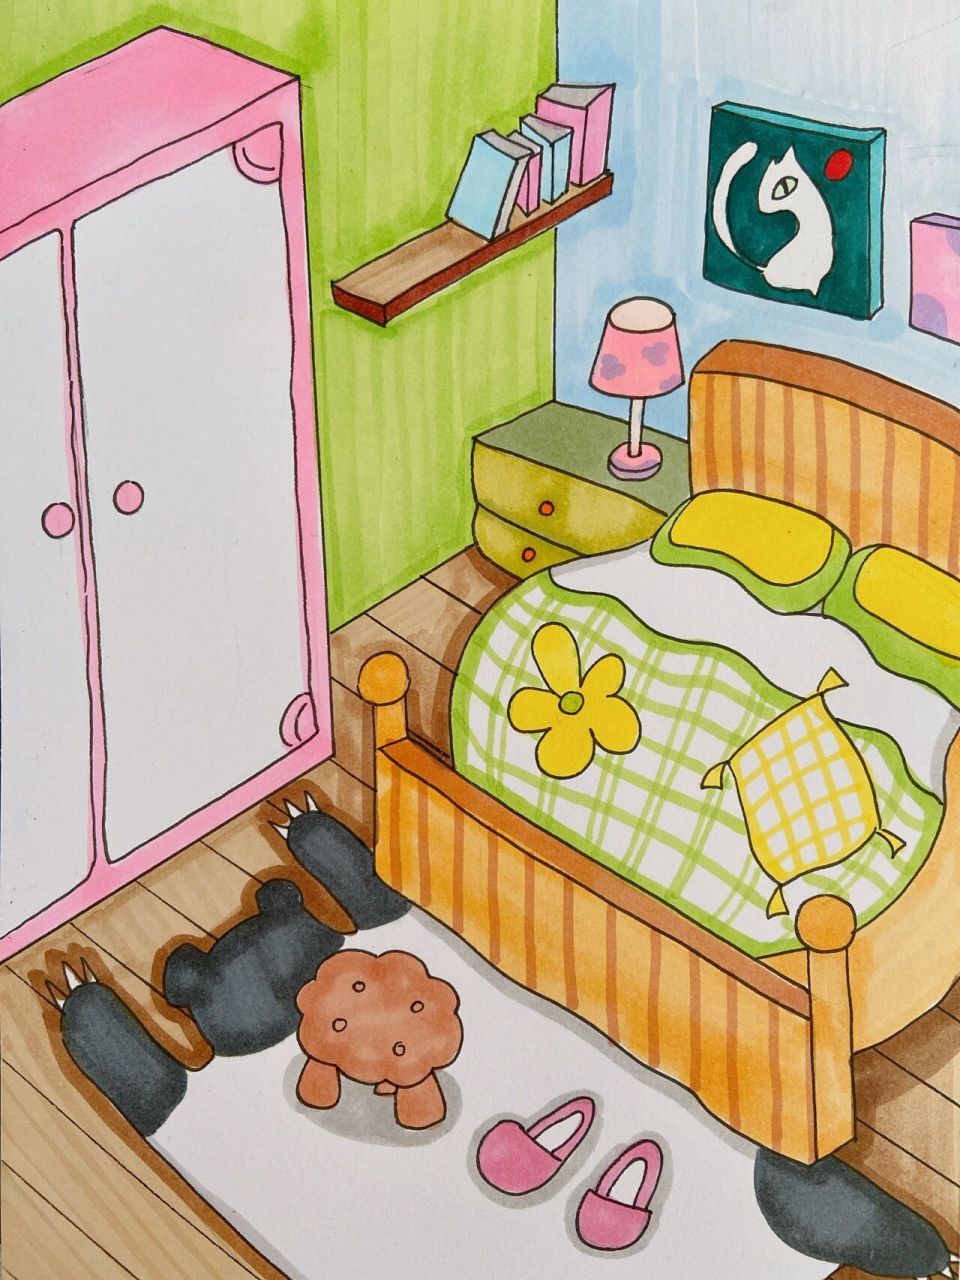 儿童房间简单画画图片